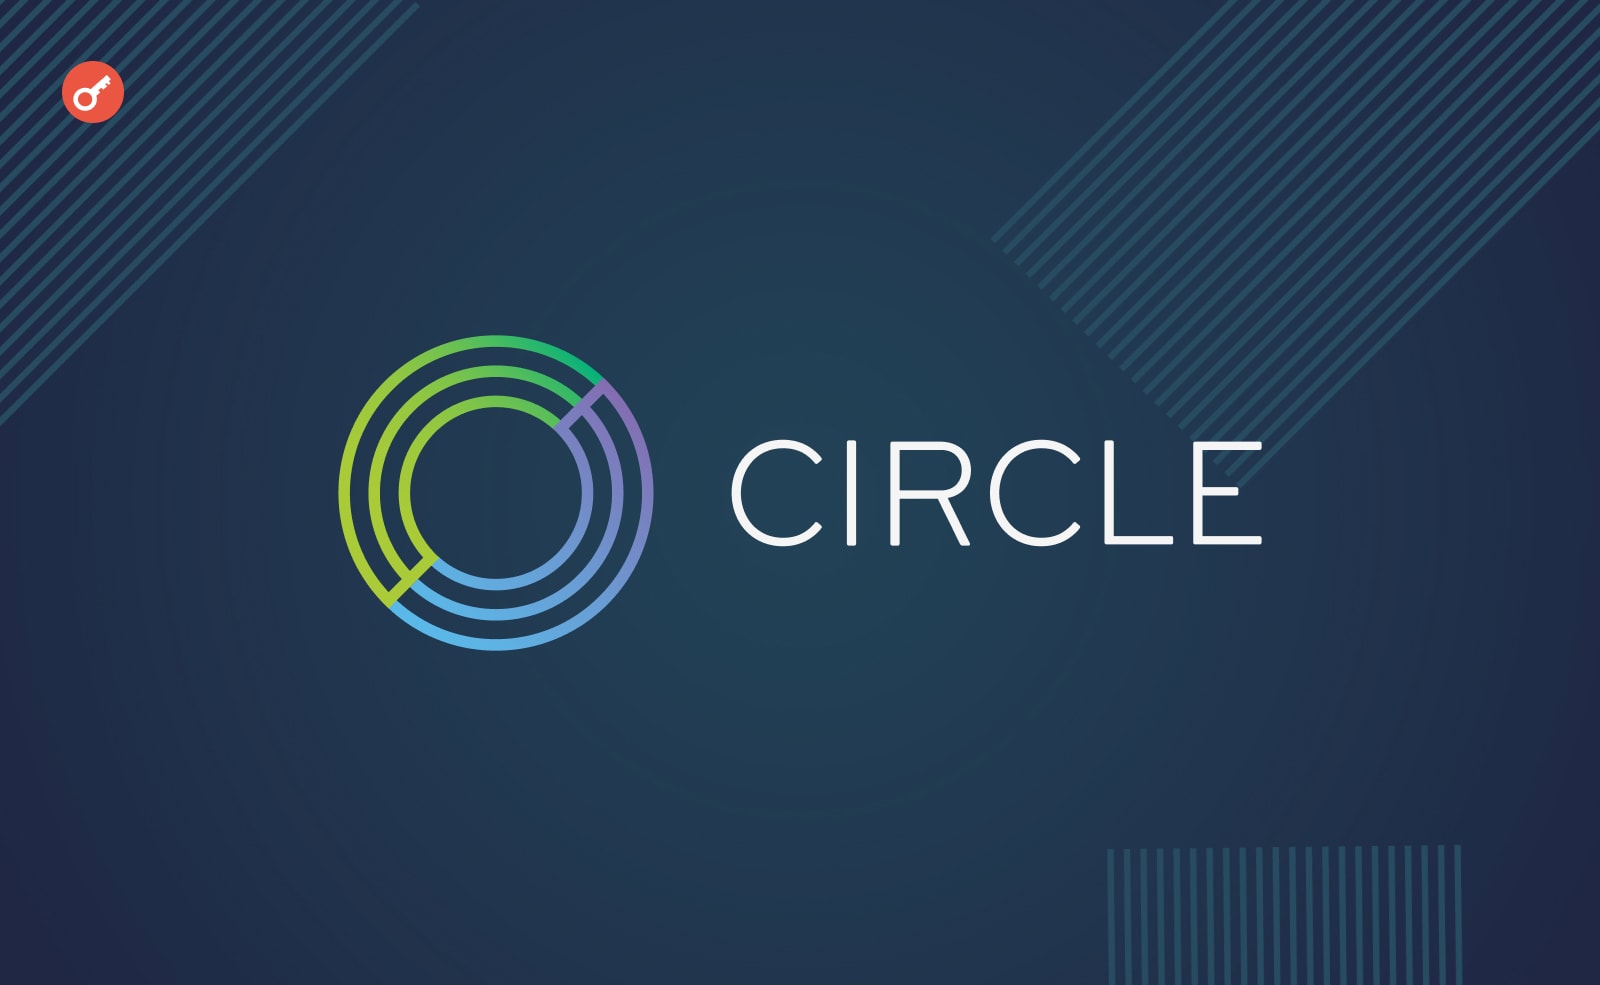 Circle запустила стейблкоин на базе евро в сети Stellar. Заглавный коллаж новости.